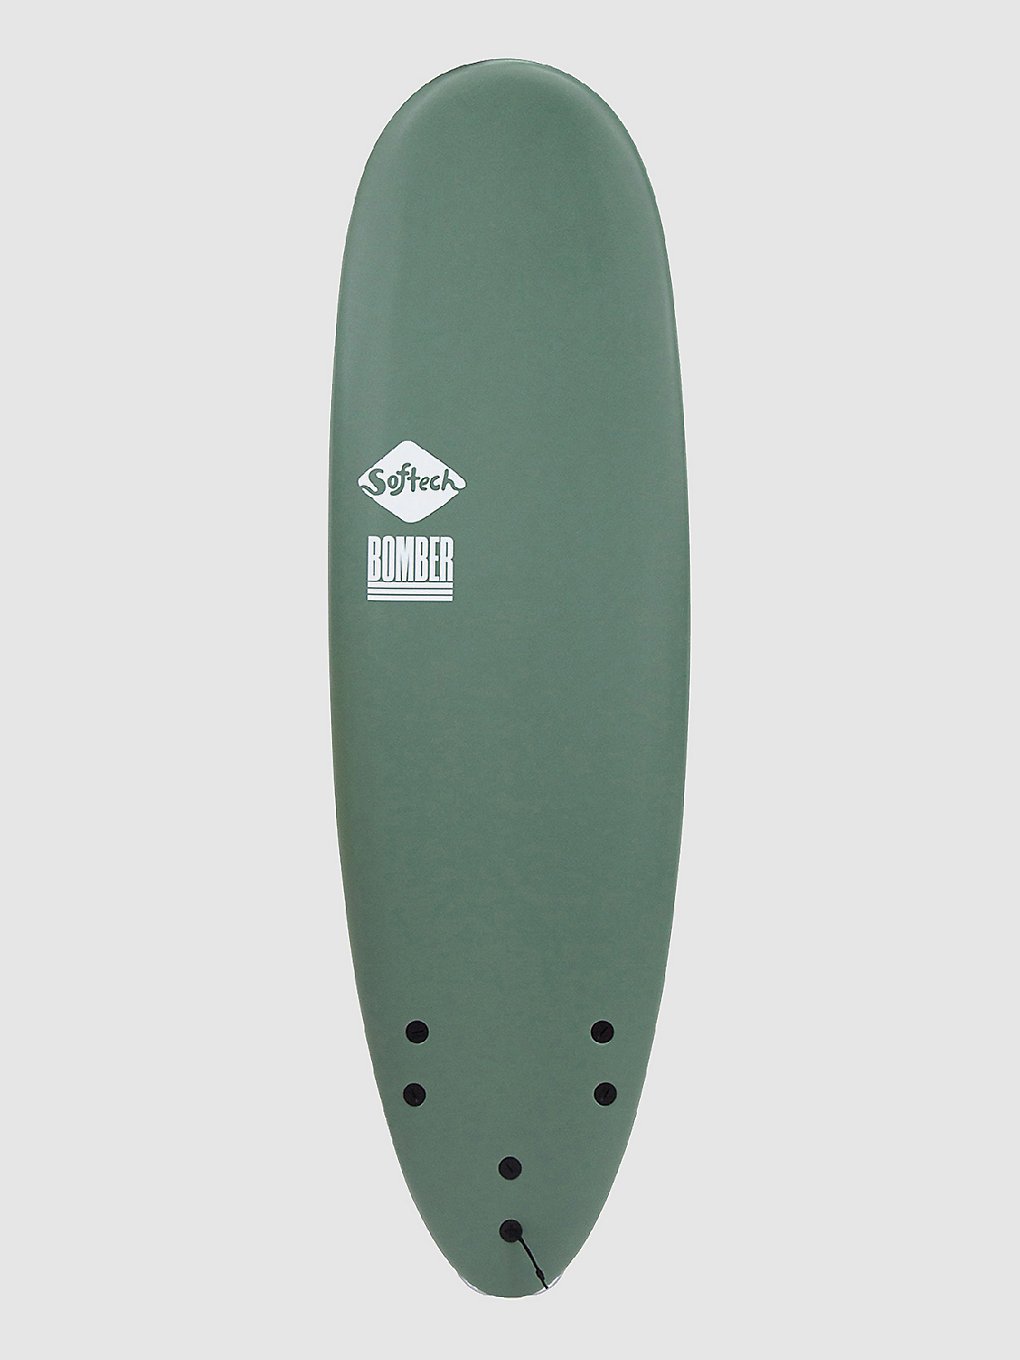 Softech Bomber FCS II 6'4 Surfboard groen